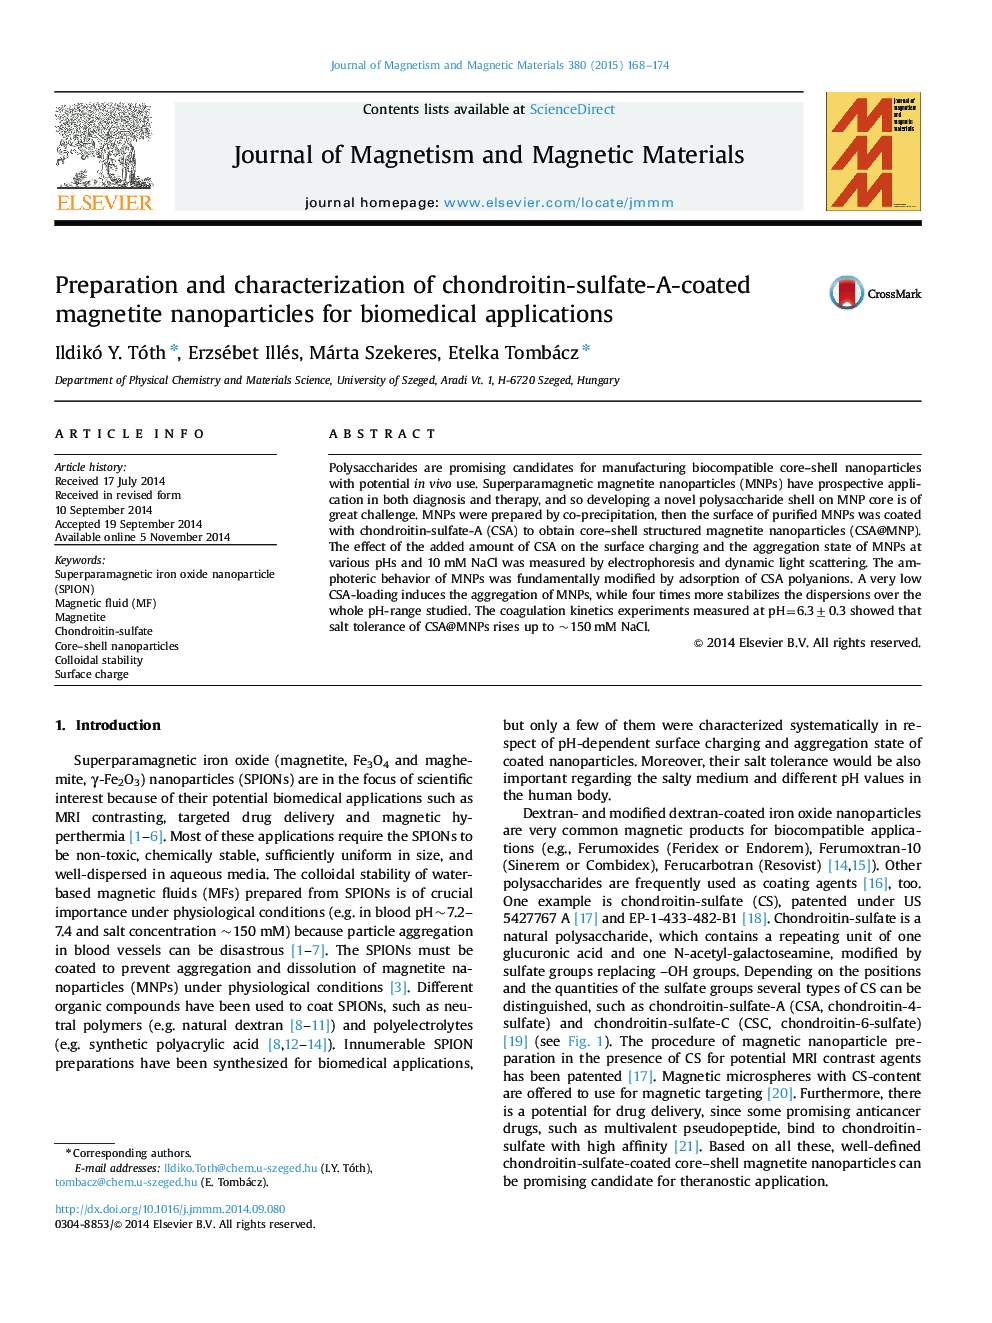 آماده سازی و مشخصه های نانوذرات مغناطیسی کاندرویتینا سولفاتا با استفاده از کاربردهای زیست پزشکی 